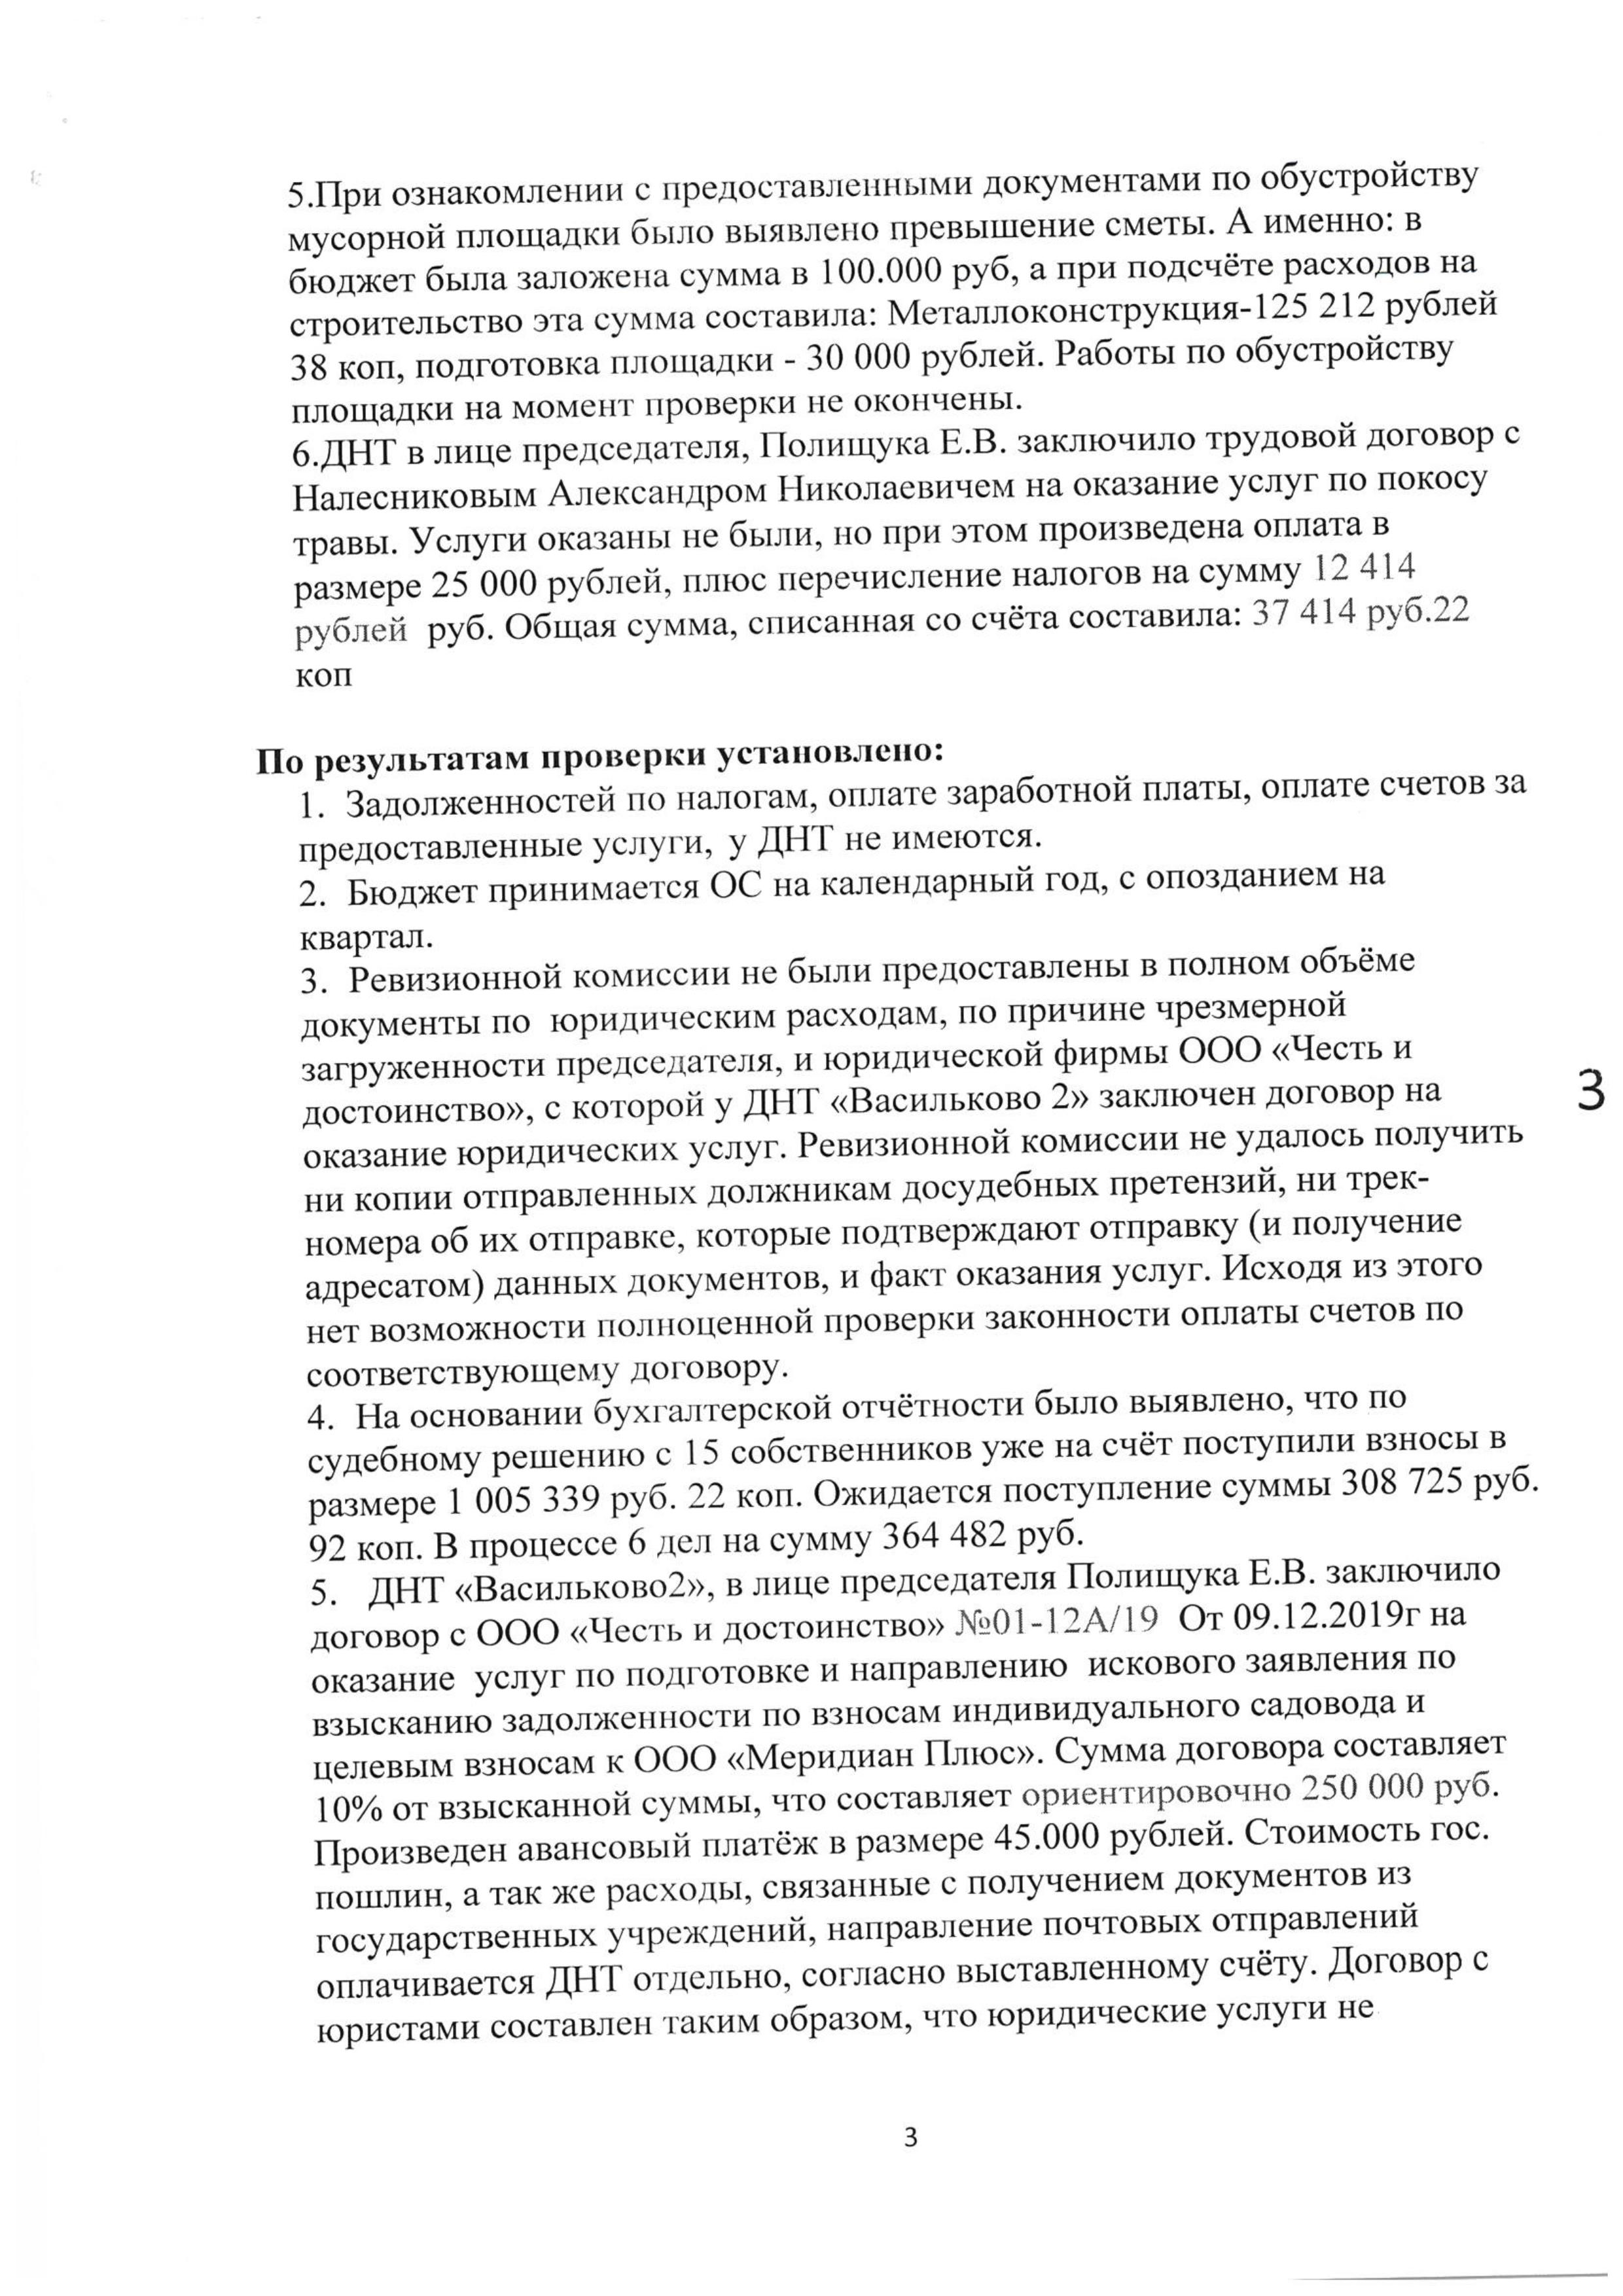 Отчет ревизионной комиссии Васильково-2 14.03.2020 страница 3